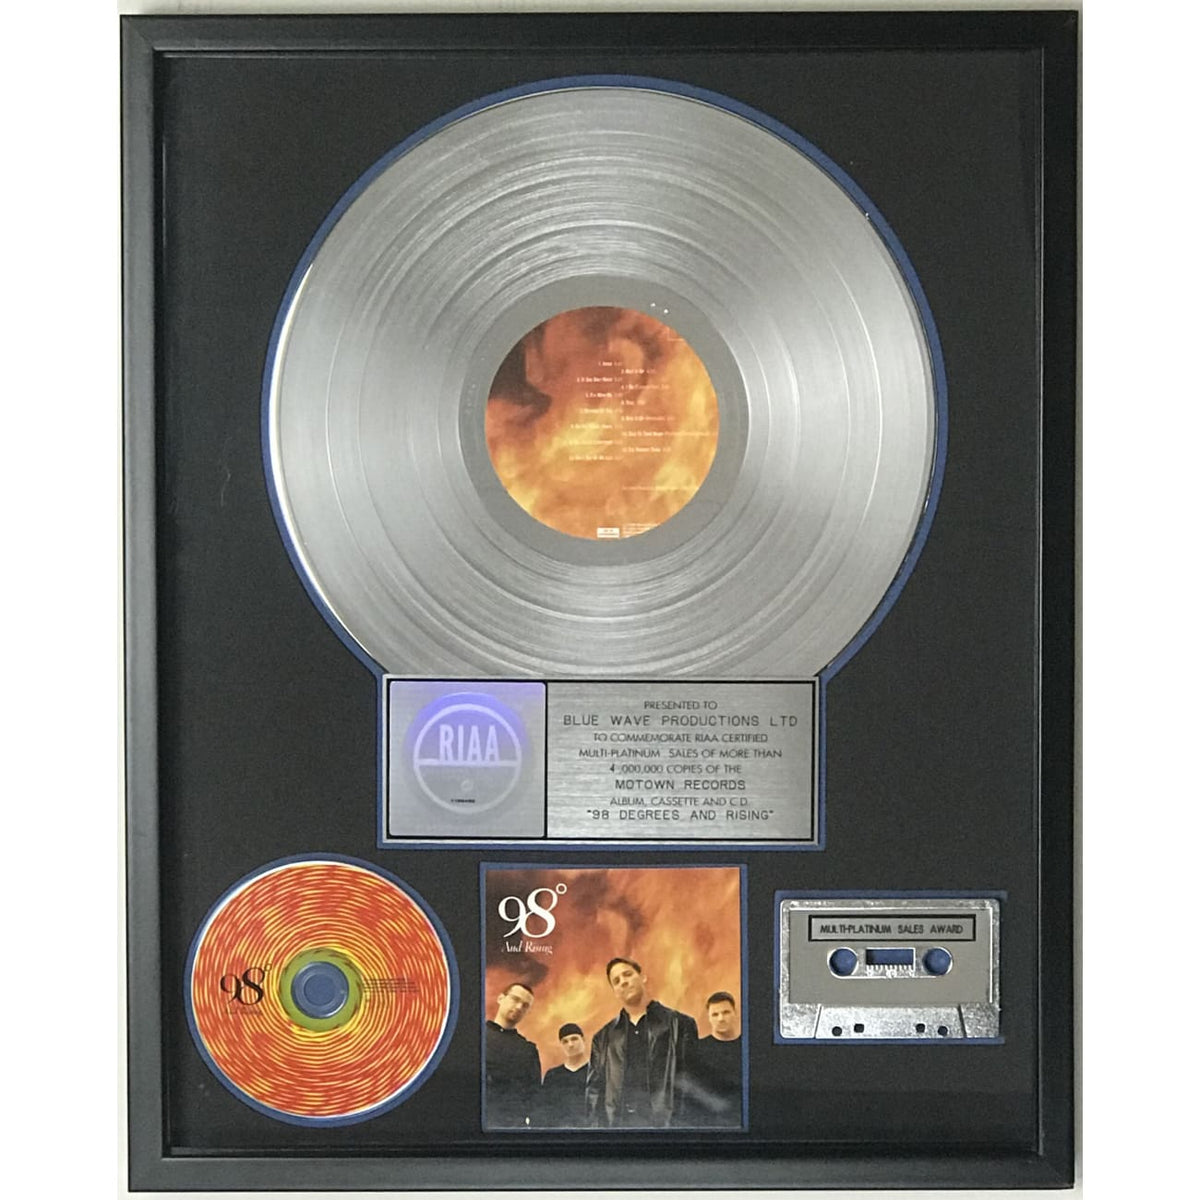 98 Degrees and Rising RIAA 4x Multi-Platinum Album Award